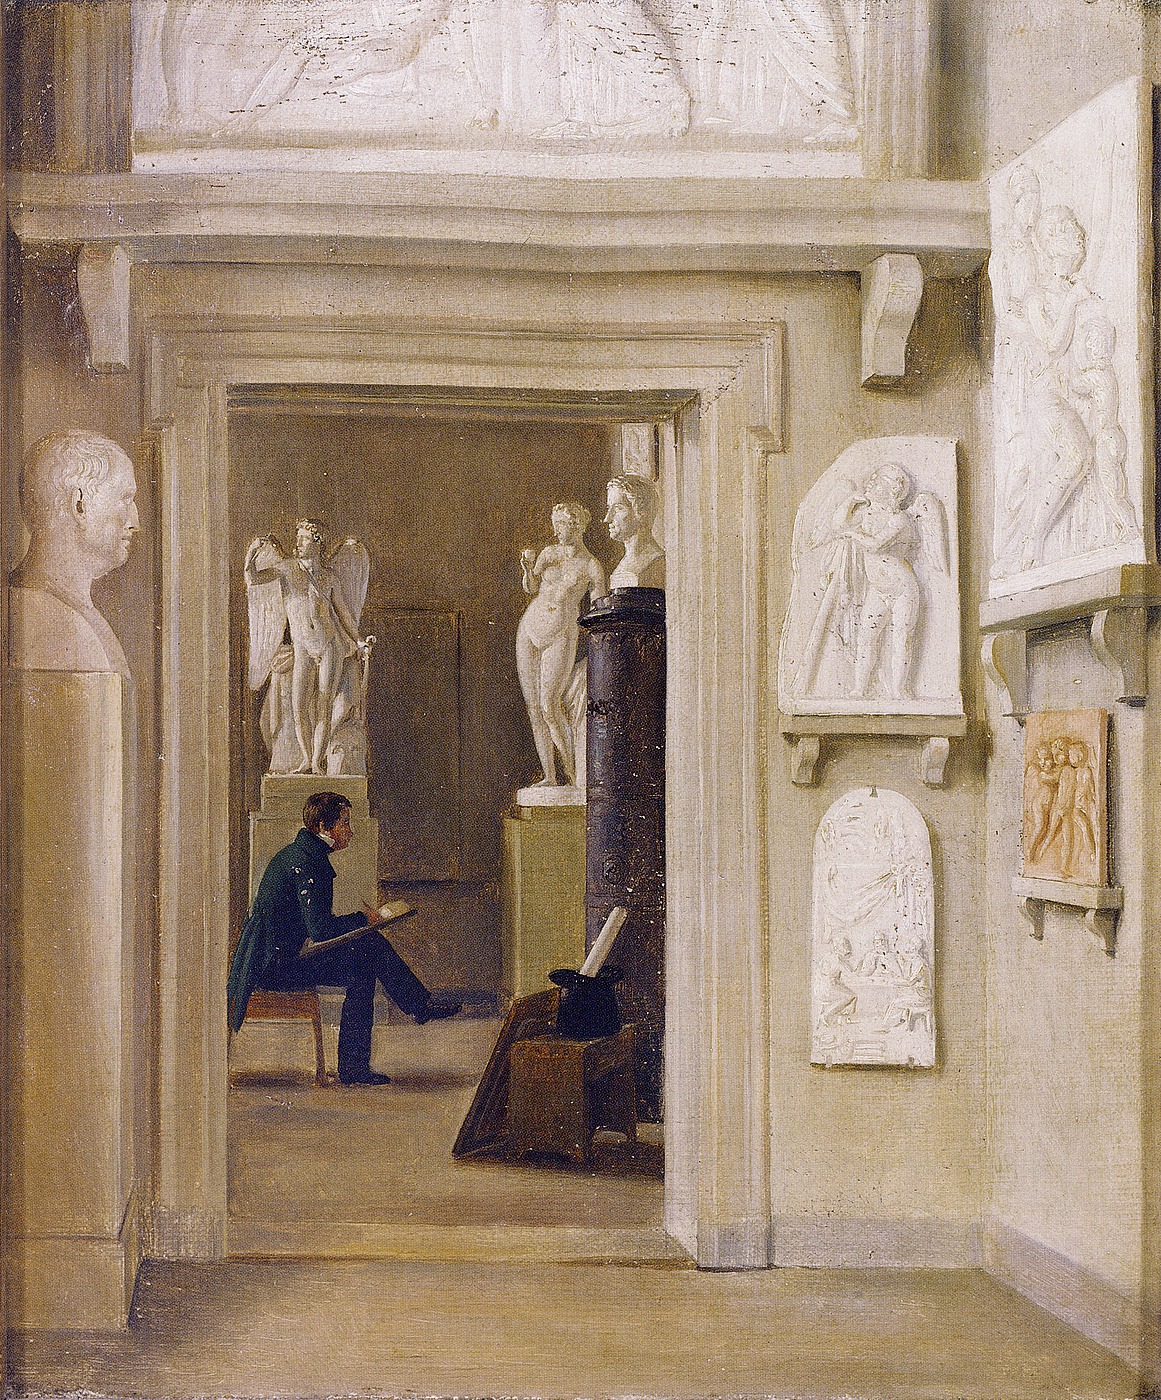 Ubekendt kunstner: Interiør med ung mand der studerer Thorvaldsens skulptur Venus med æblet og Den triumferende Amor, efter 1828